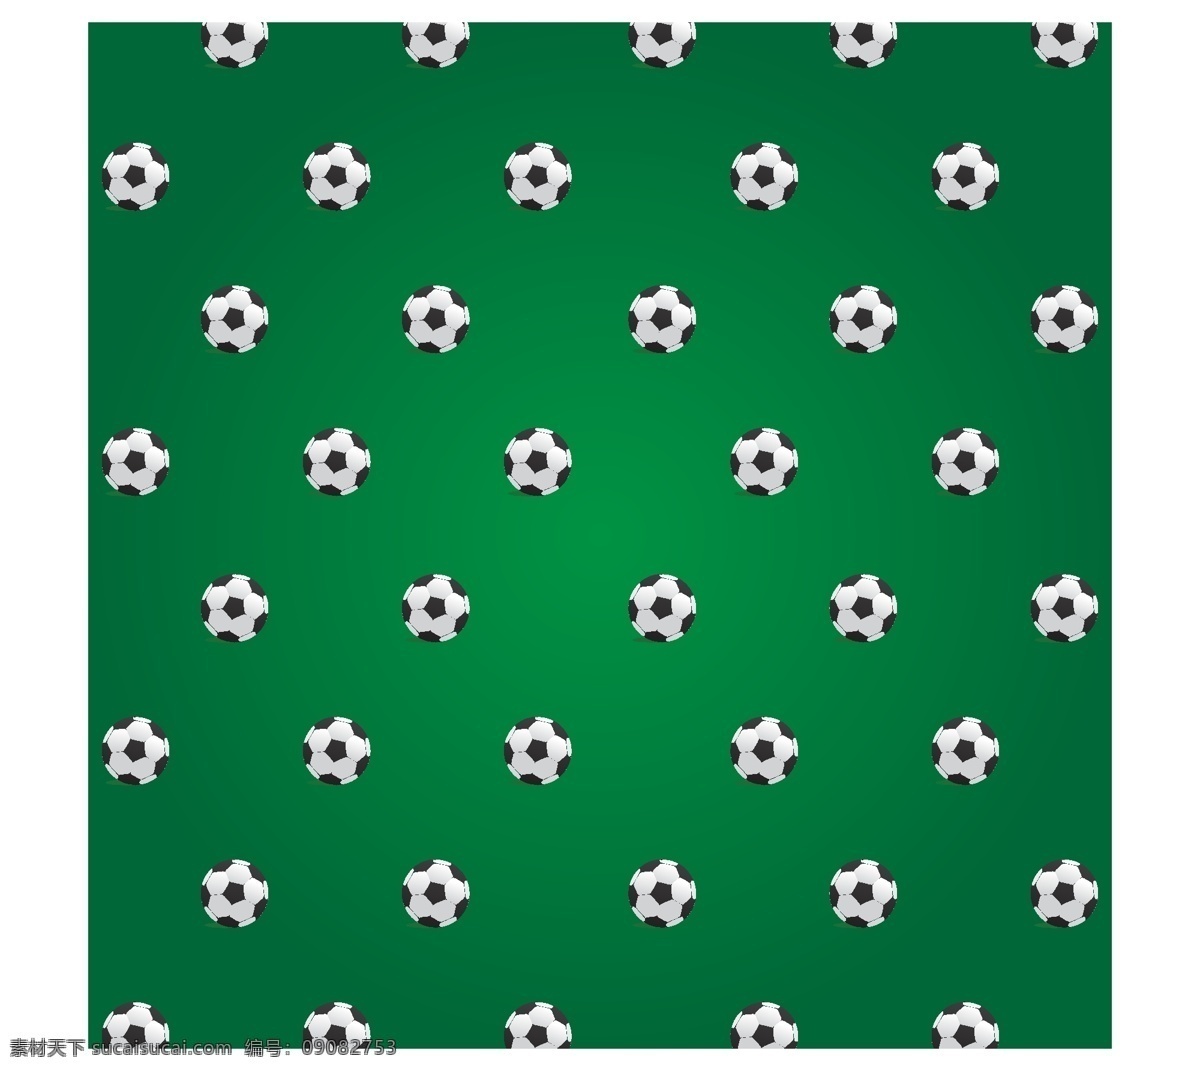 足球比赛用球 背景 模式 足球 体育 壁纸 游戏 团队 球 无缝 图案背景 绿色